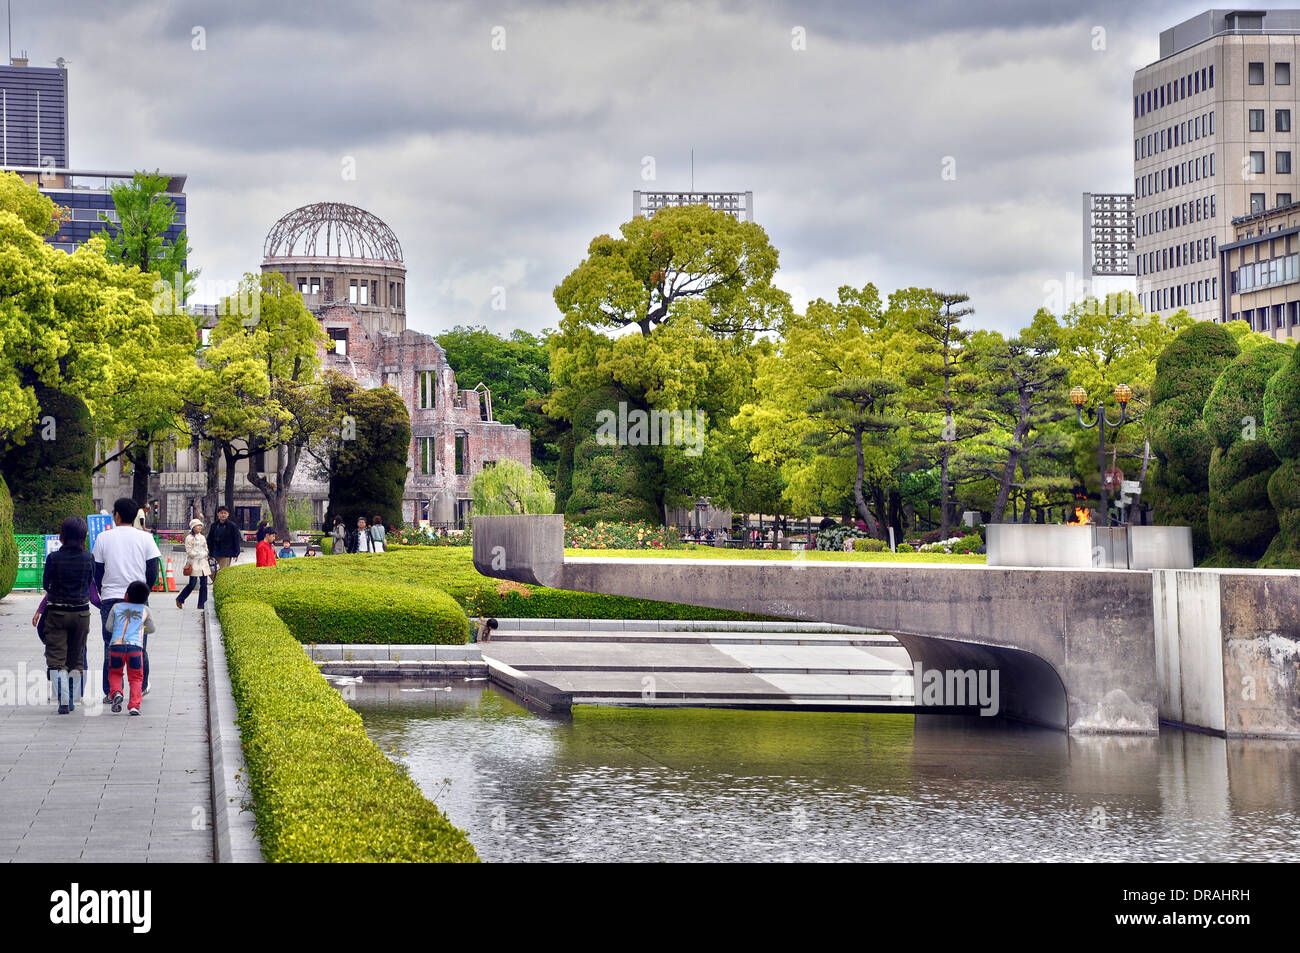 Hiroshima Peace Memorial e la cupola della bomba atomica in background - Hiroshima, Giappone Foto Stock